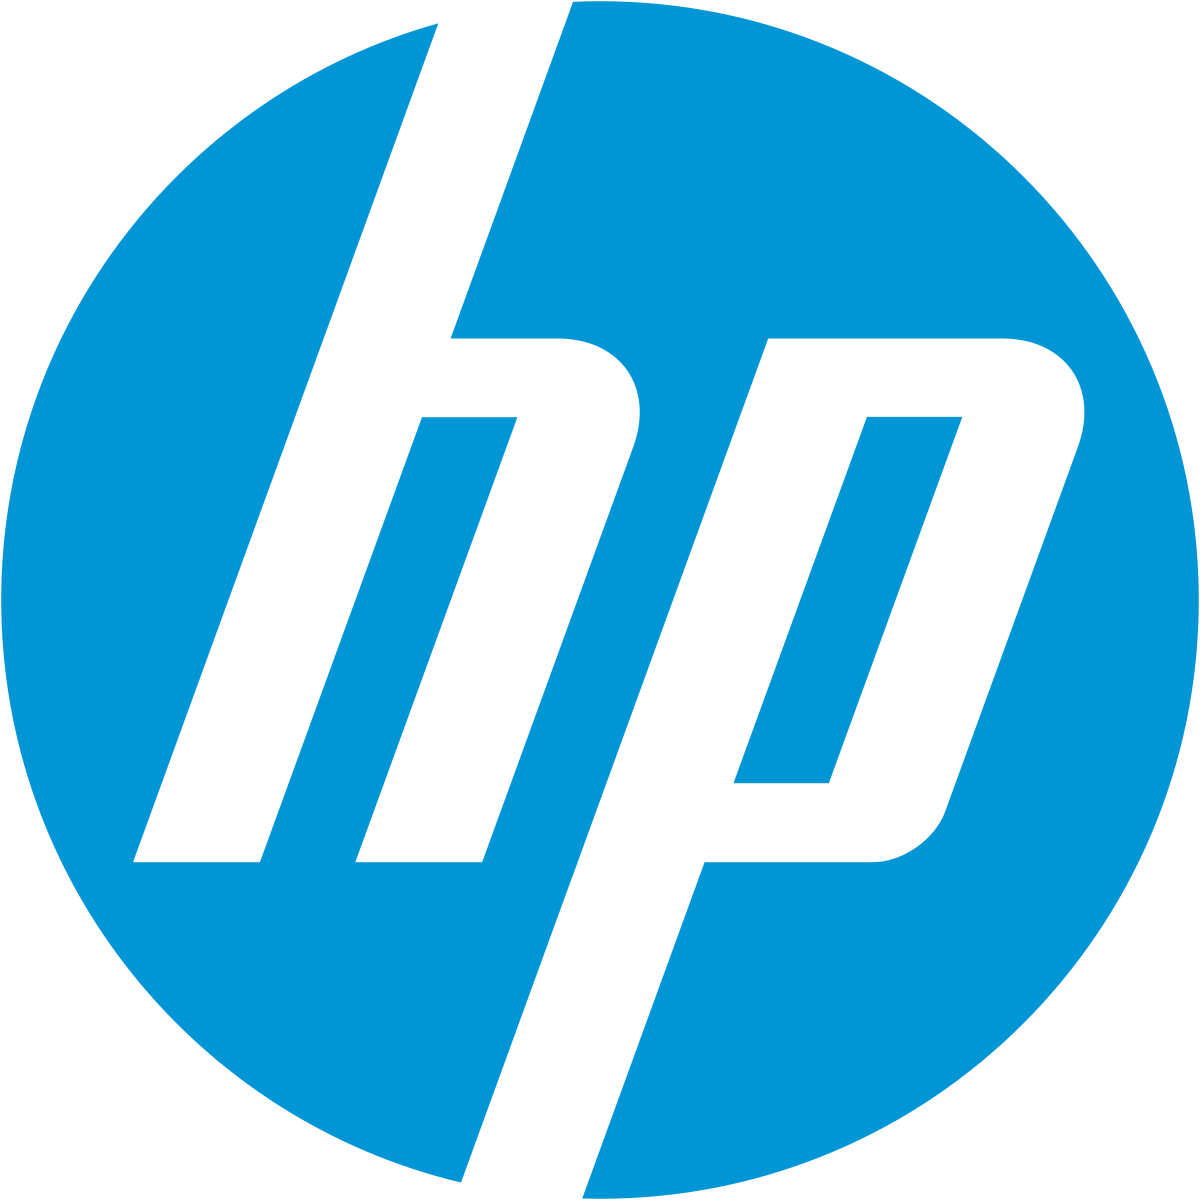 HP 963XL Cartouche d'Encre Noire grande capacité Authentique (3JA30AE) pour  HP OfficeJet Pro 9010 series / 9020 series